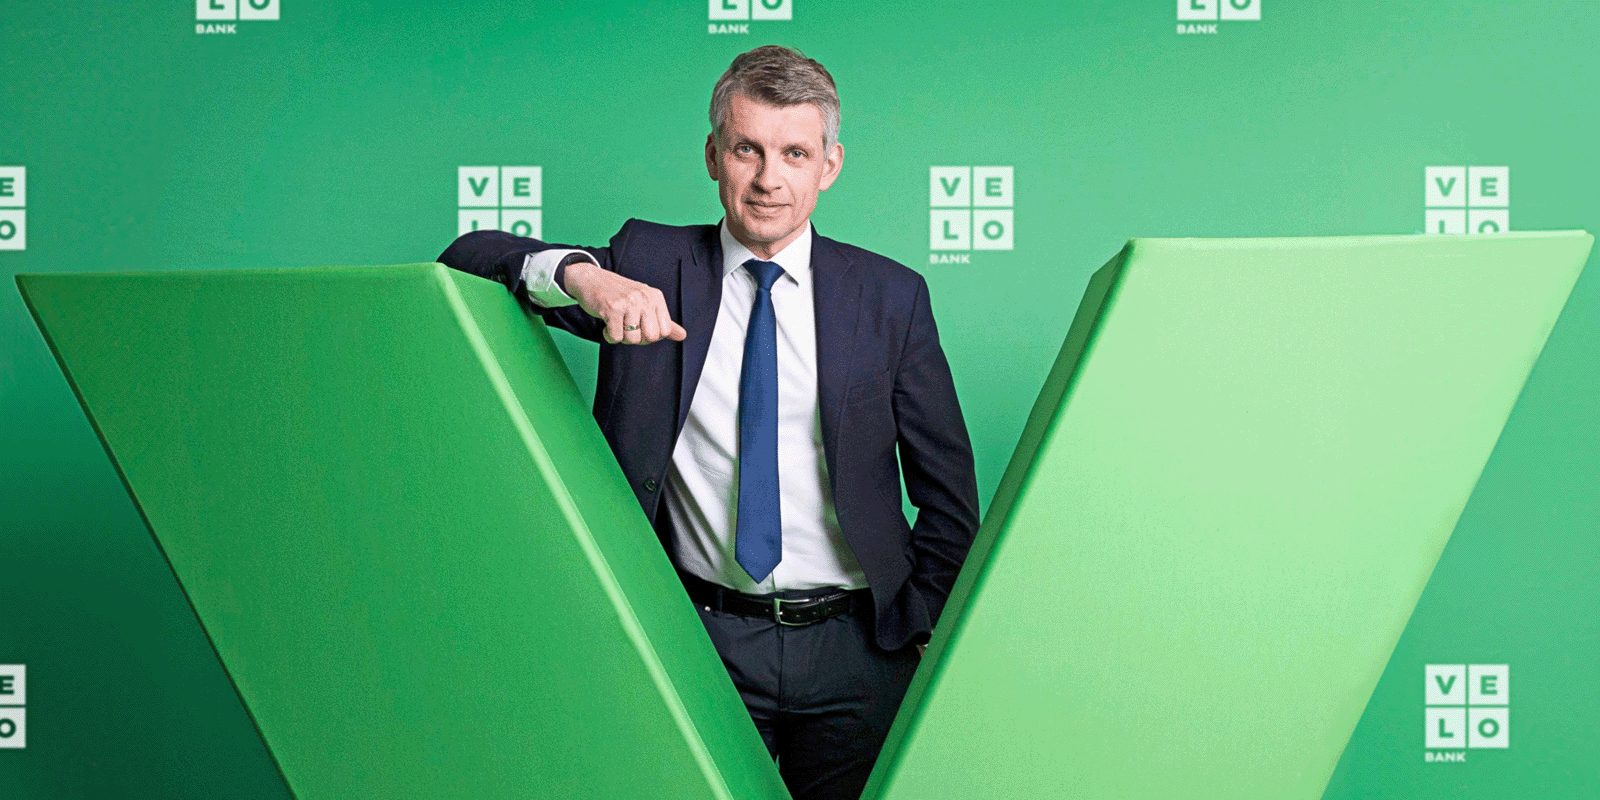 VeloBank z nowym inwestorem fundusze MEDIARUN.COM VELOBANK INWESTYCJA V1